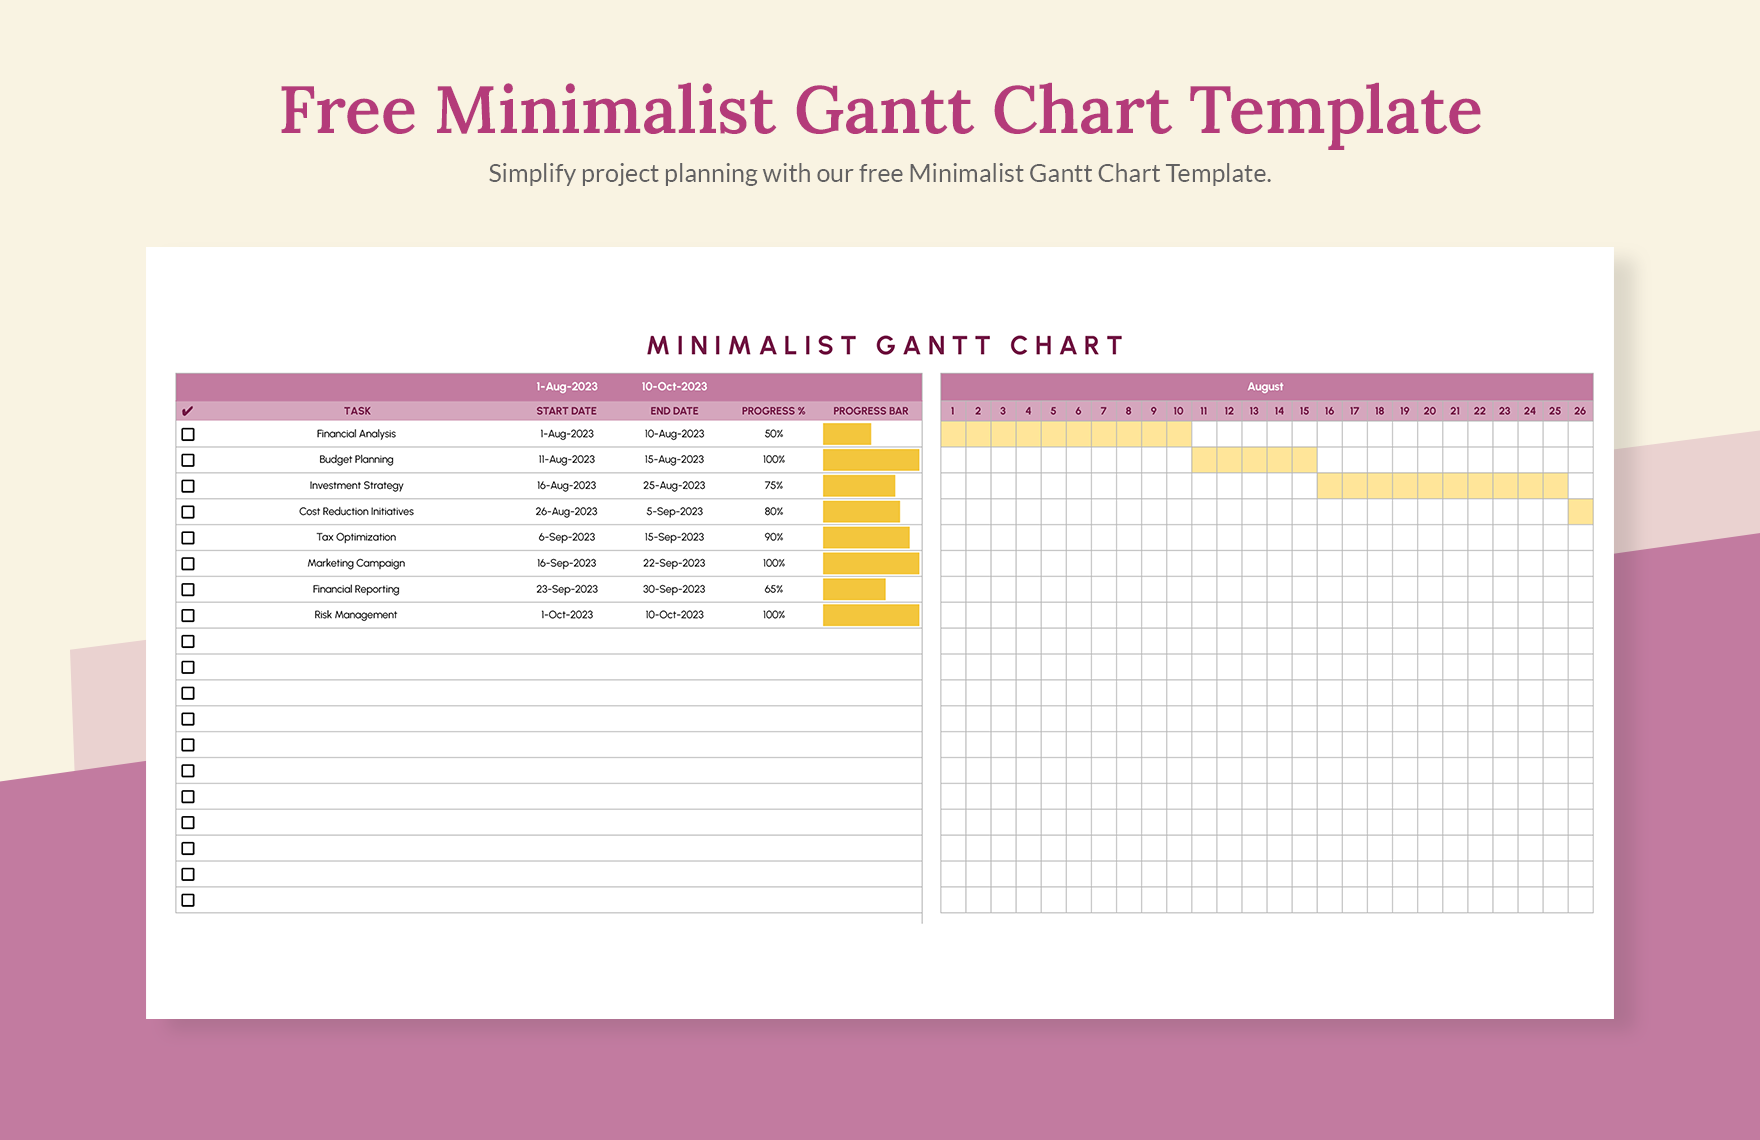 Free Minimalist Gantt Chart Template